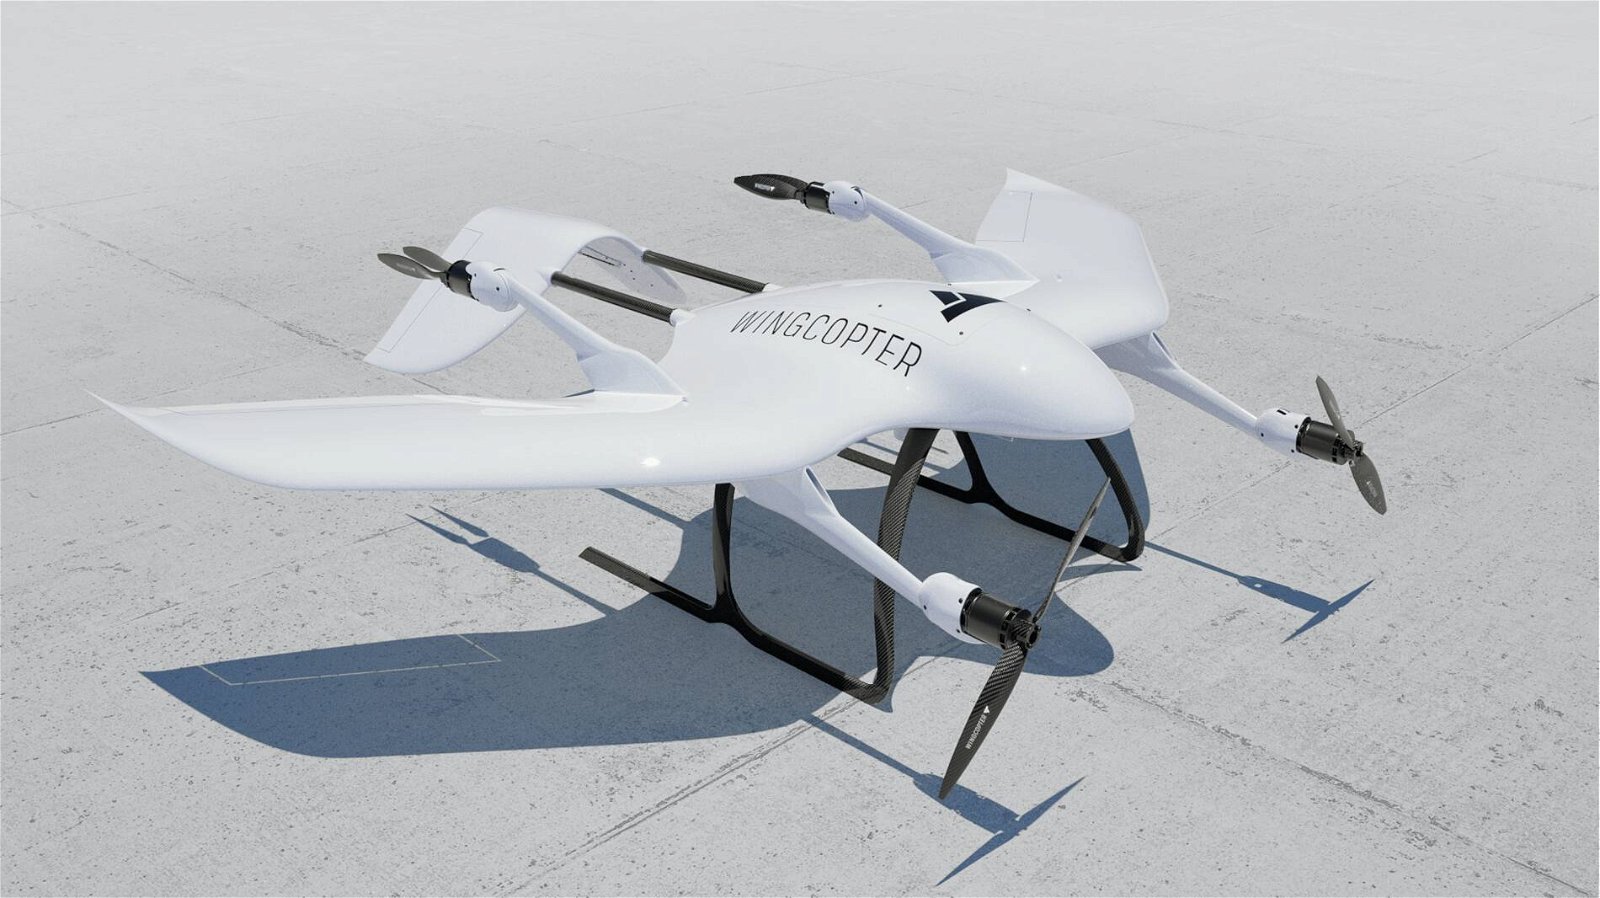 Immagine di Le dosi di vaccino per Covid-19 saranno consegnate con i droni di Wingcopter